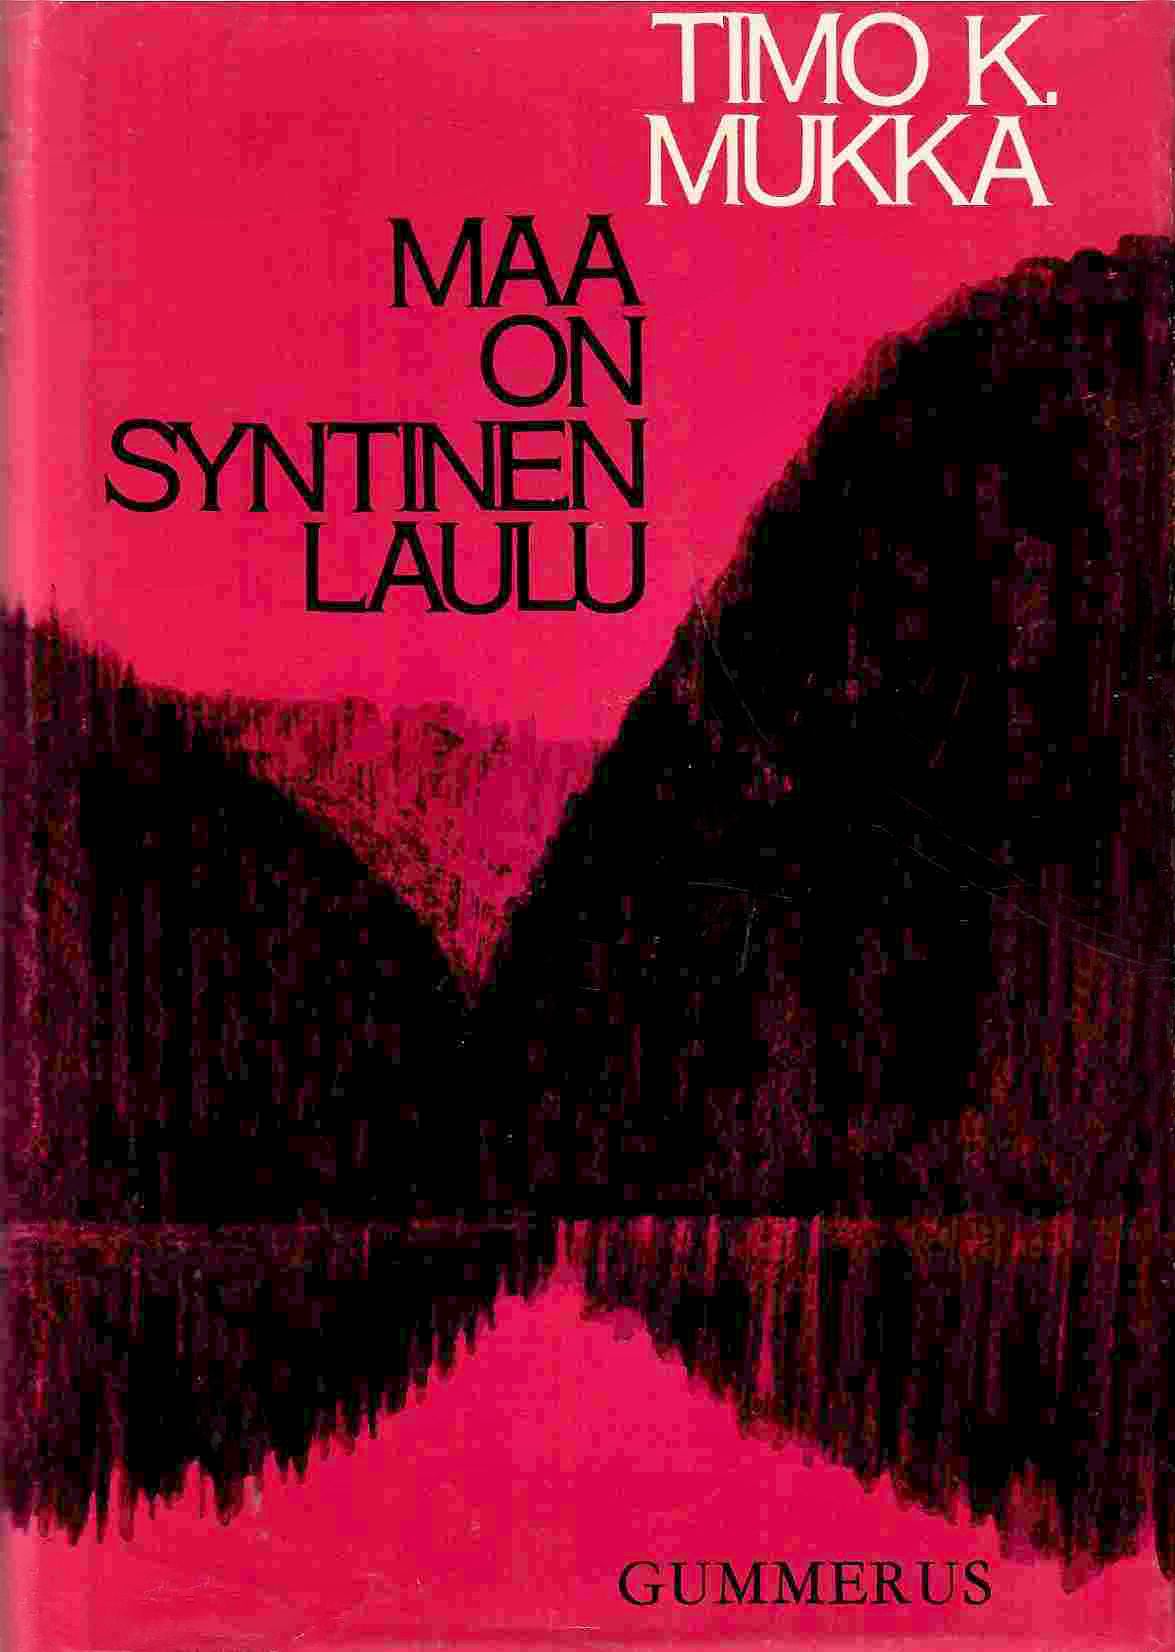 Esikoisromaani Maa on syntinen laulu (1964) toi Timo K. Mukan hetkessä koko kansan tietoisuuteen. © Gummerus